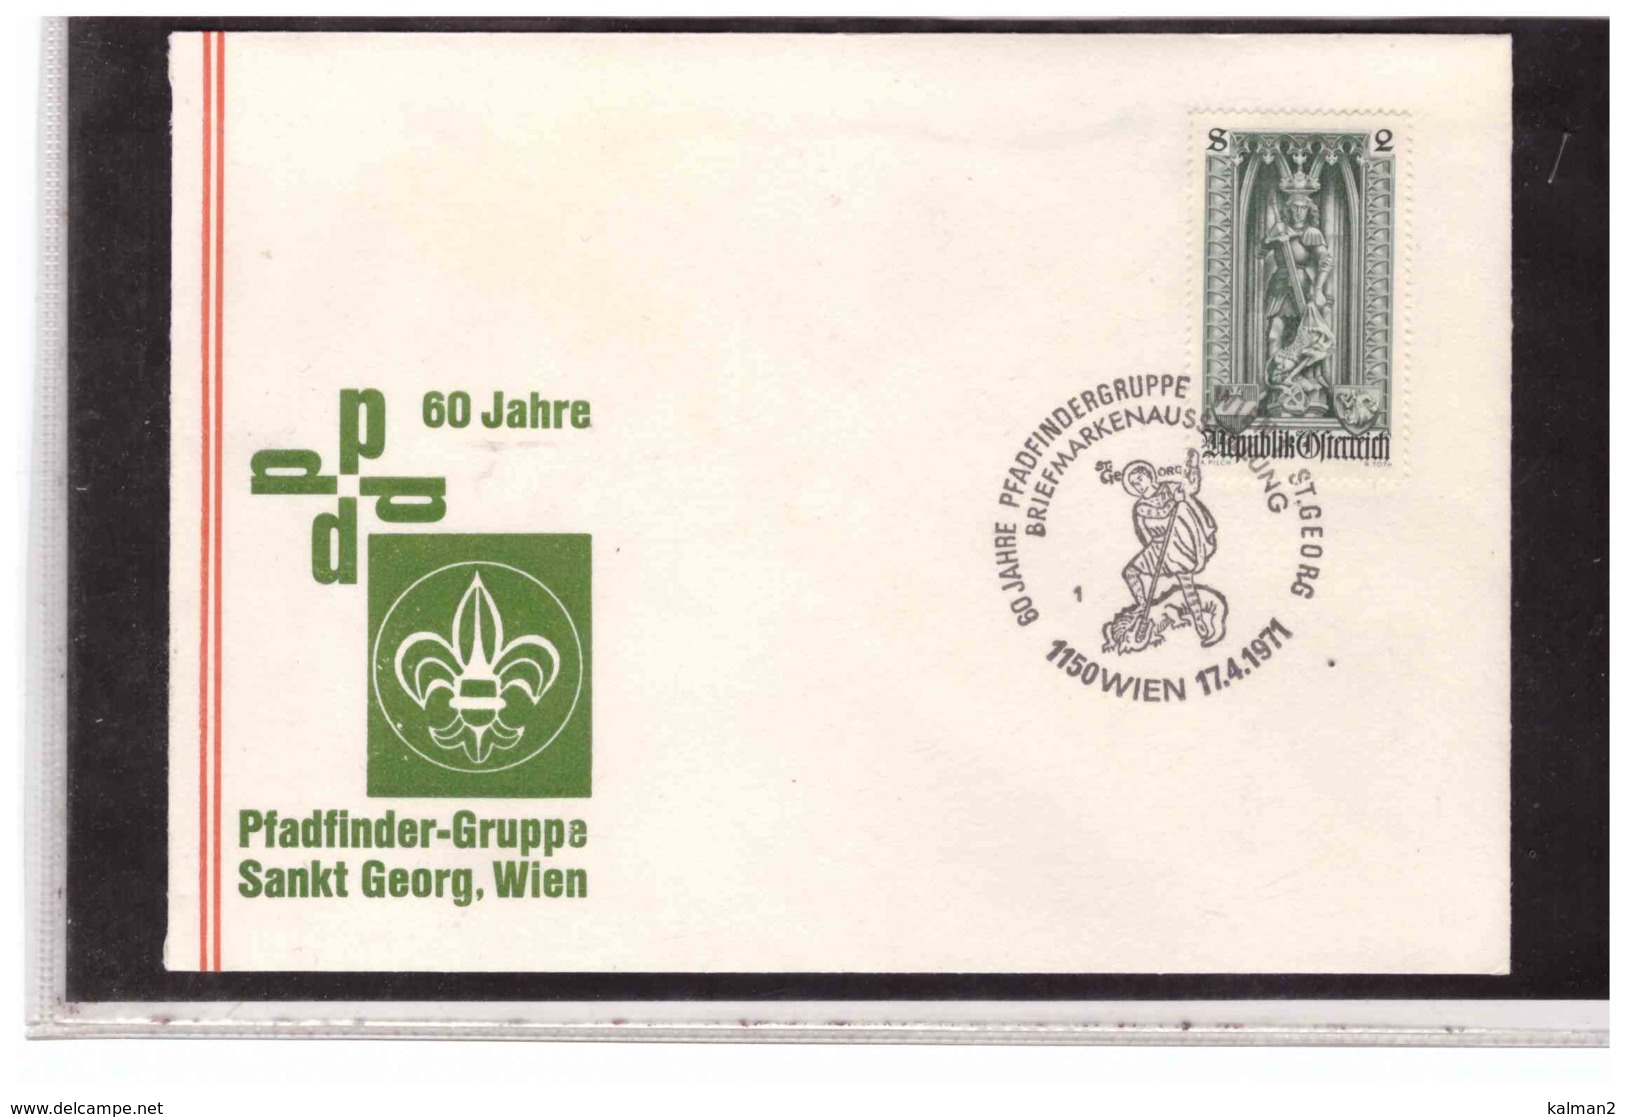 TEM4452  -    WIEN  17.4.1971   /   PFADFINDER-GRUPPE  SANKT GEORG.WIEN - Briefe U. Dokumente